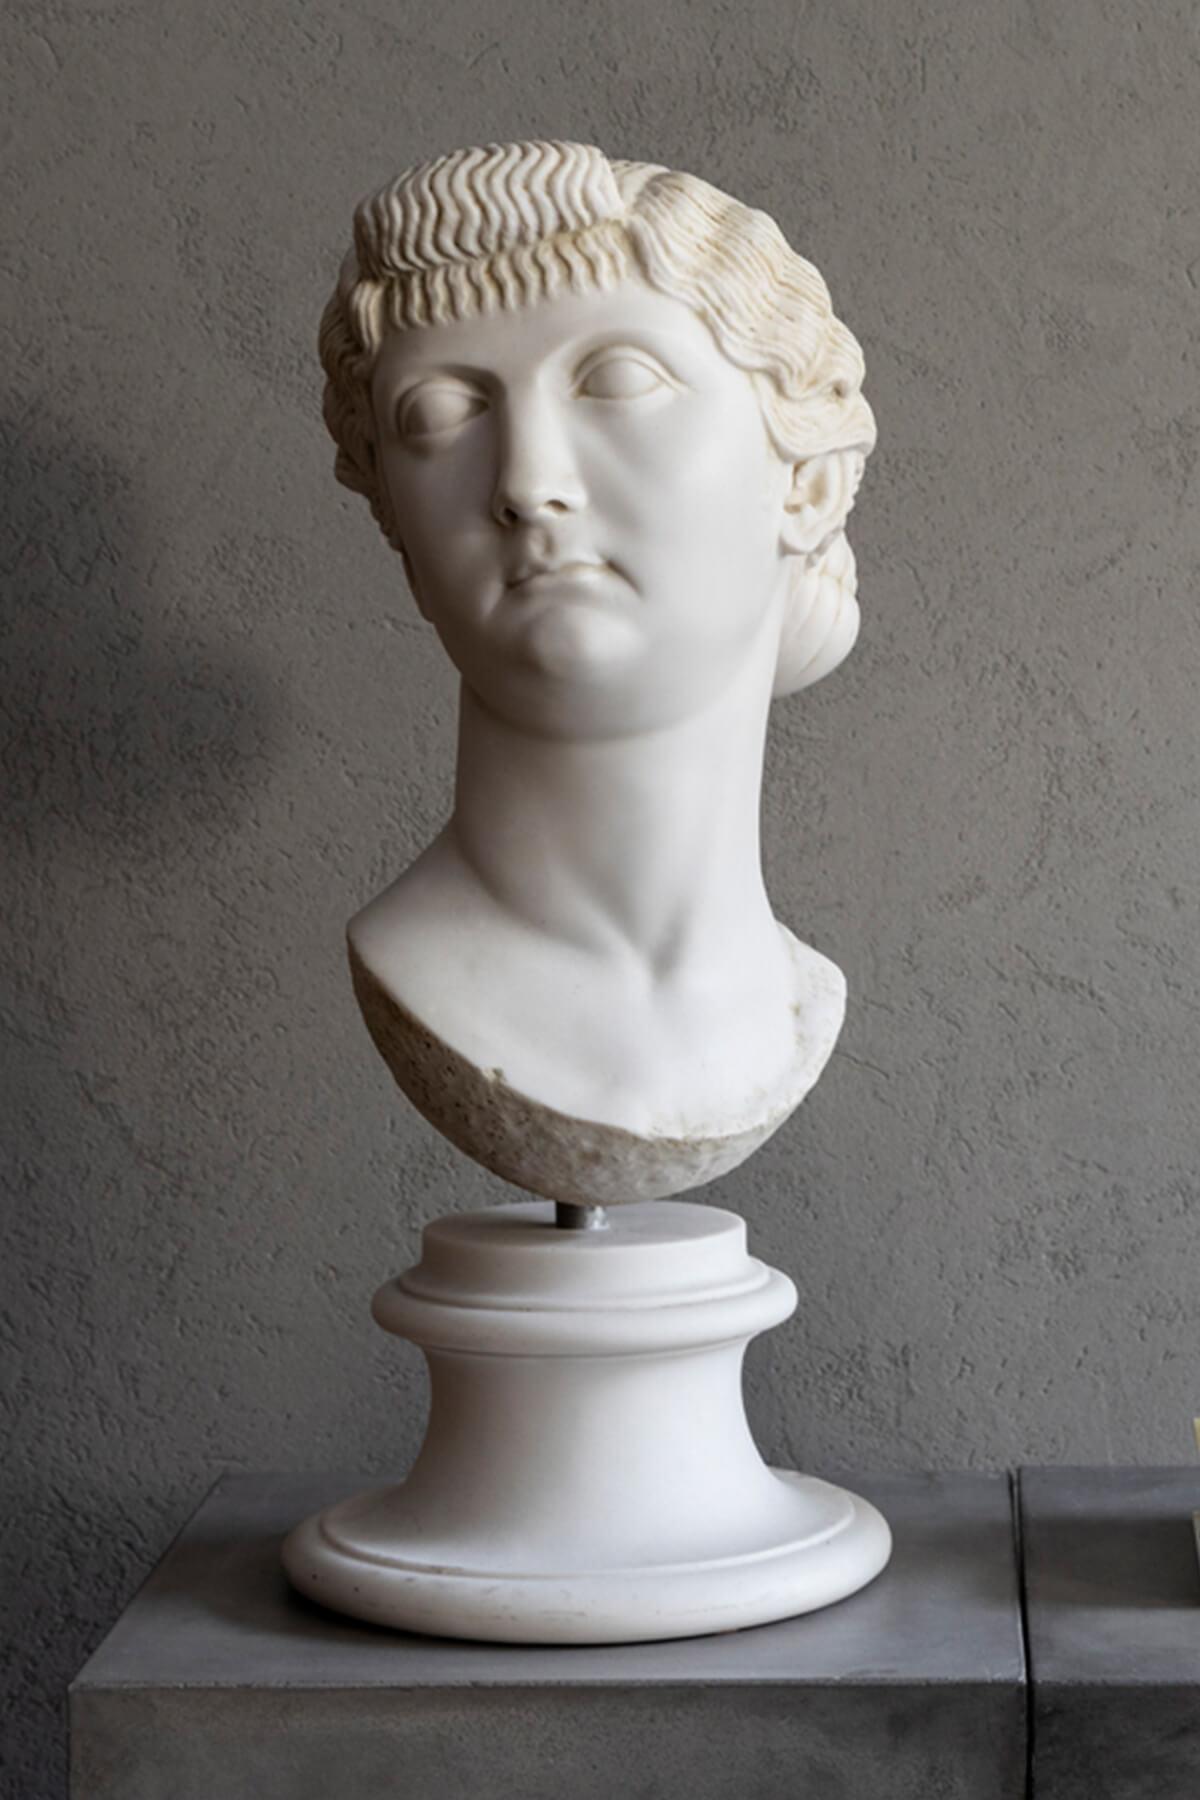 Au premier siècle, Livia était décrite comme la femme la plus forte de Rome. Dans les sources anciennes, elle est fièrement décrite comme étant apte à être impératrice, fidèle à l'émeraude et bonne épouse, et toujours équilibrée et pondérée. On dit